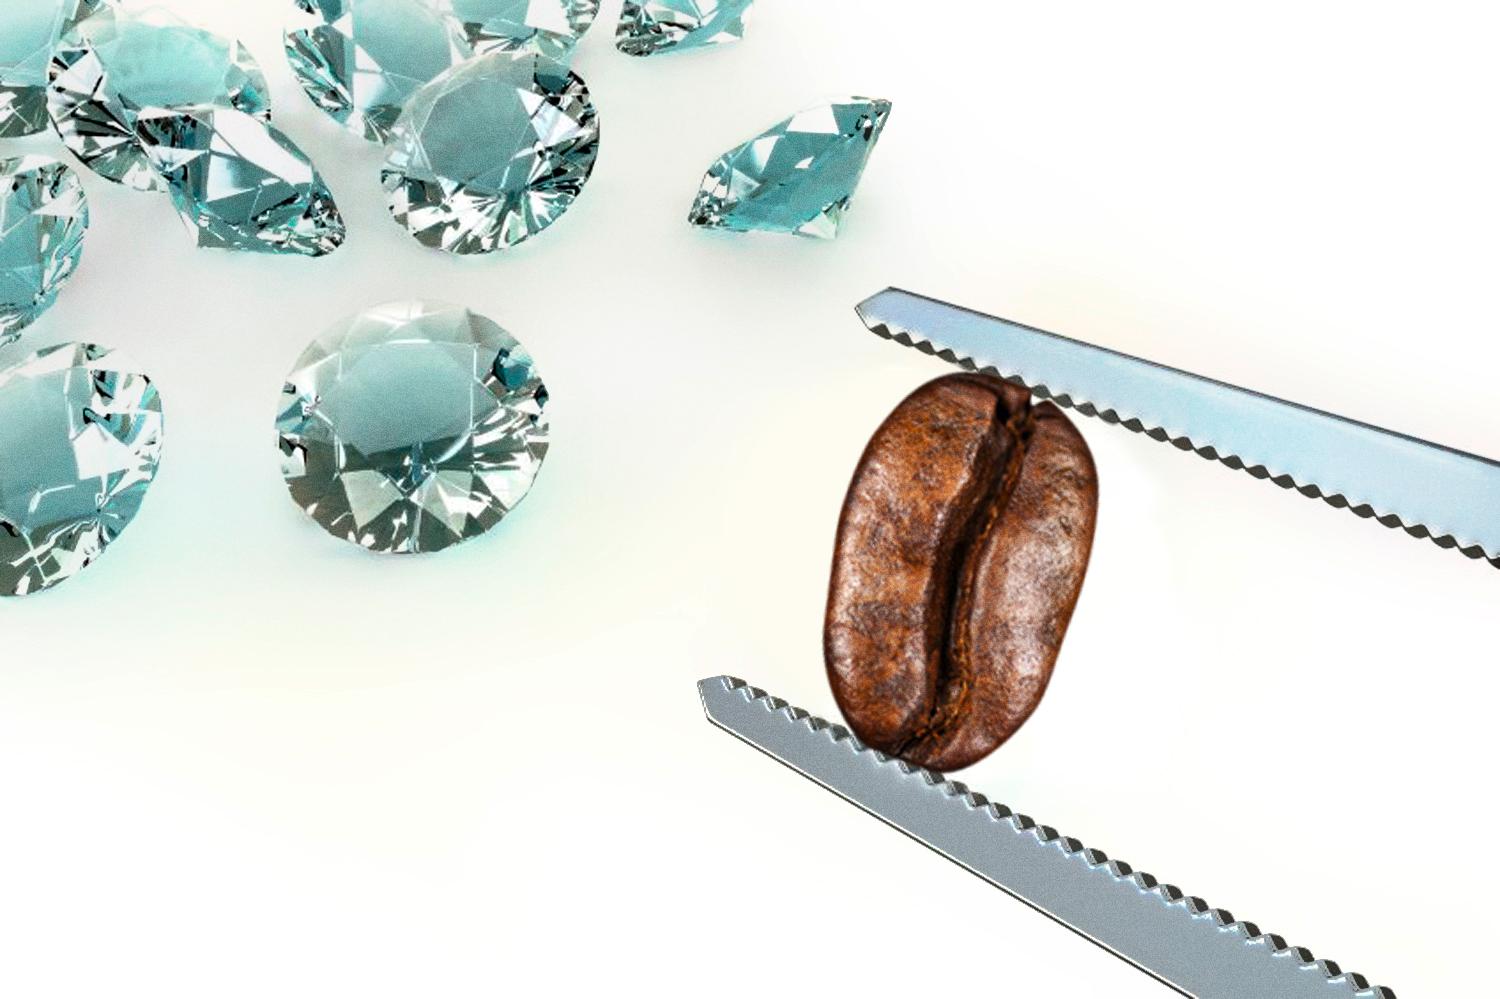 Diamentowy błysk to symbol precyzji i gwarancja jakości.